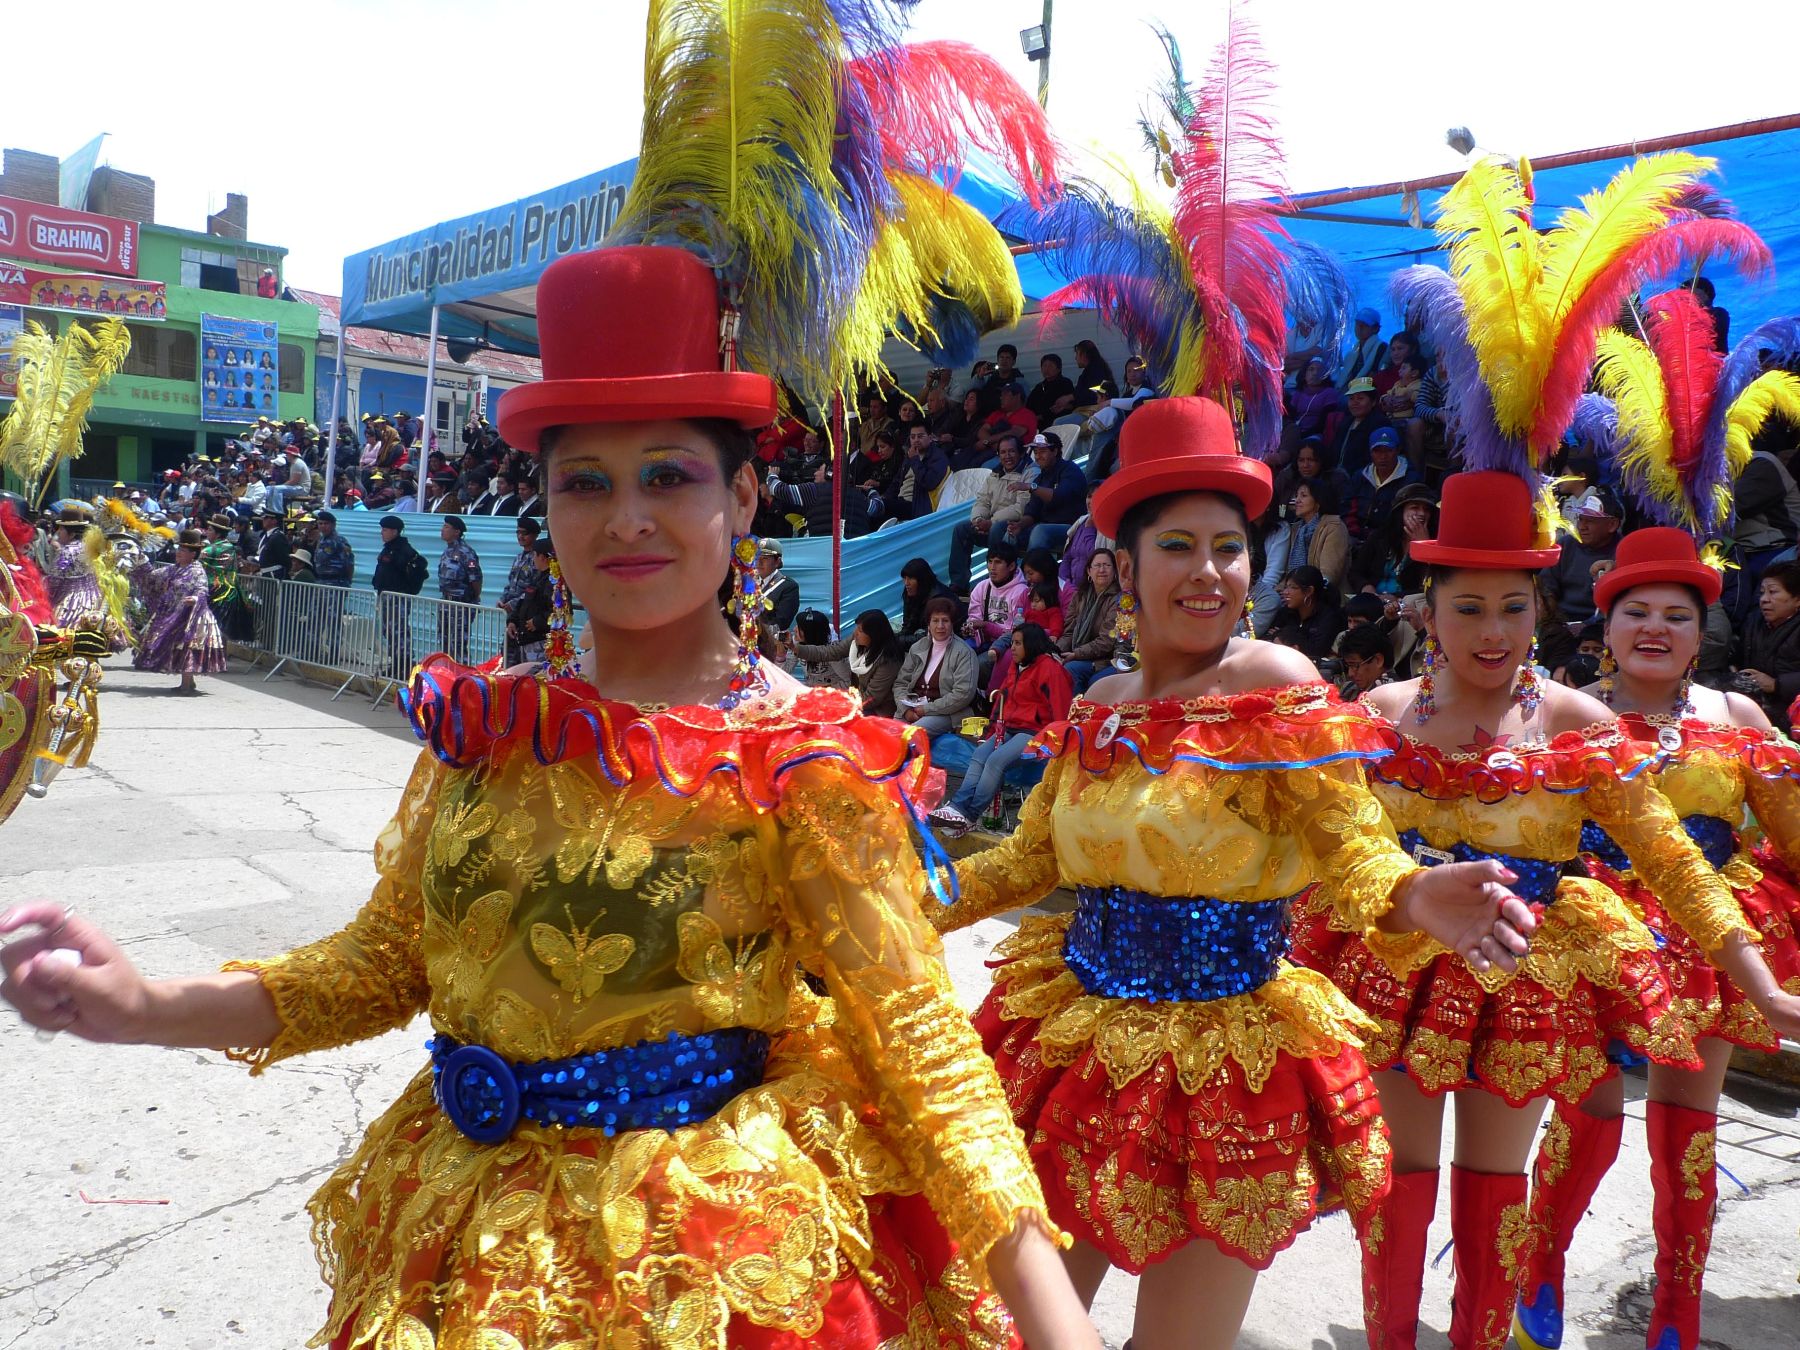 La festividad de la Virgen de la Candelaria, en la ciudad de Puno, tiene hoy una de sus principales actividades tradicionales llenas de colorido y alegría: el concurso de trajes de luces que convierten a Puno en la "Capital del Folclor Peruano". Foto: ANDINA/Difusión